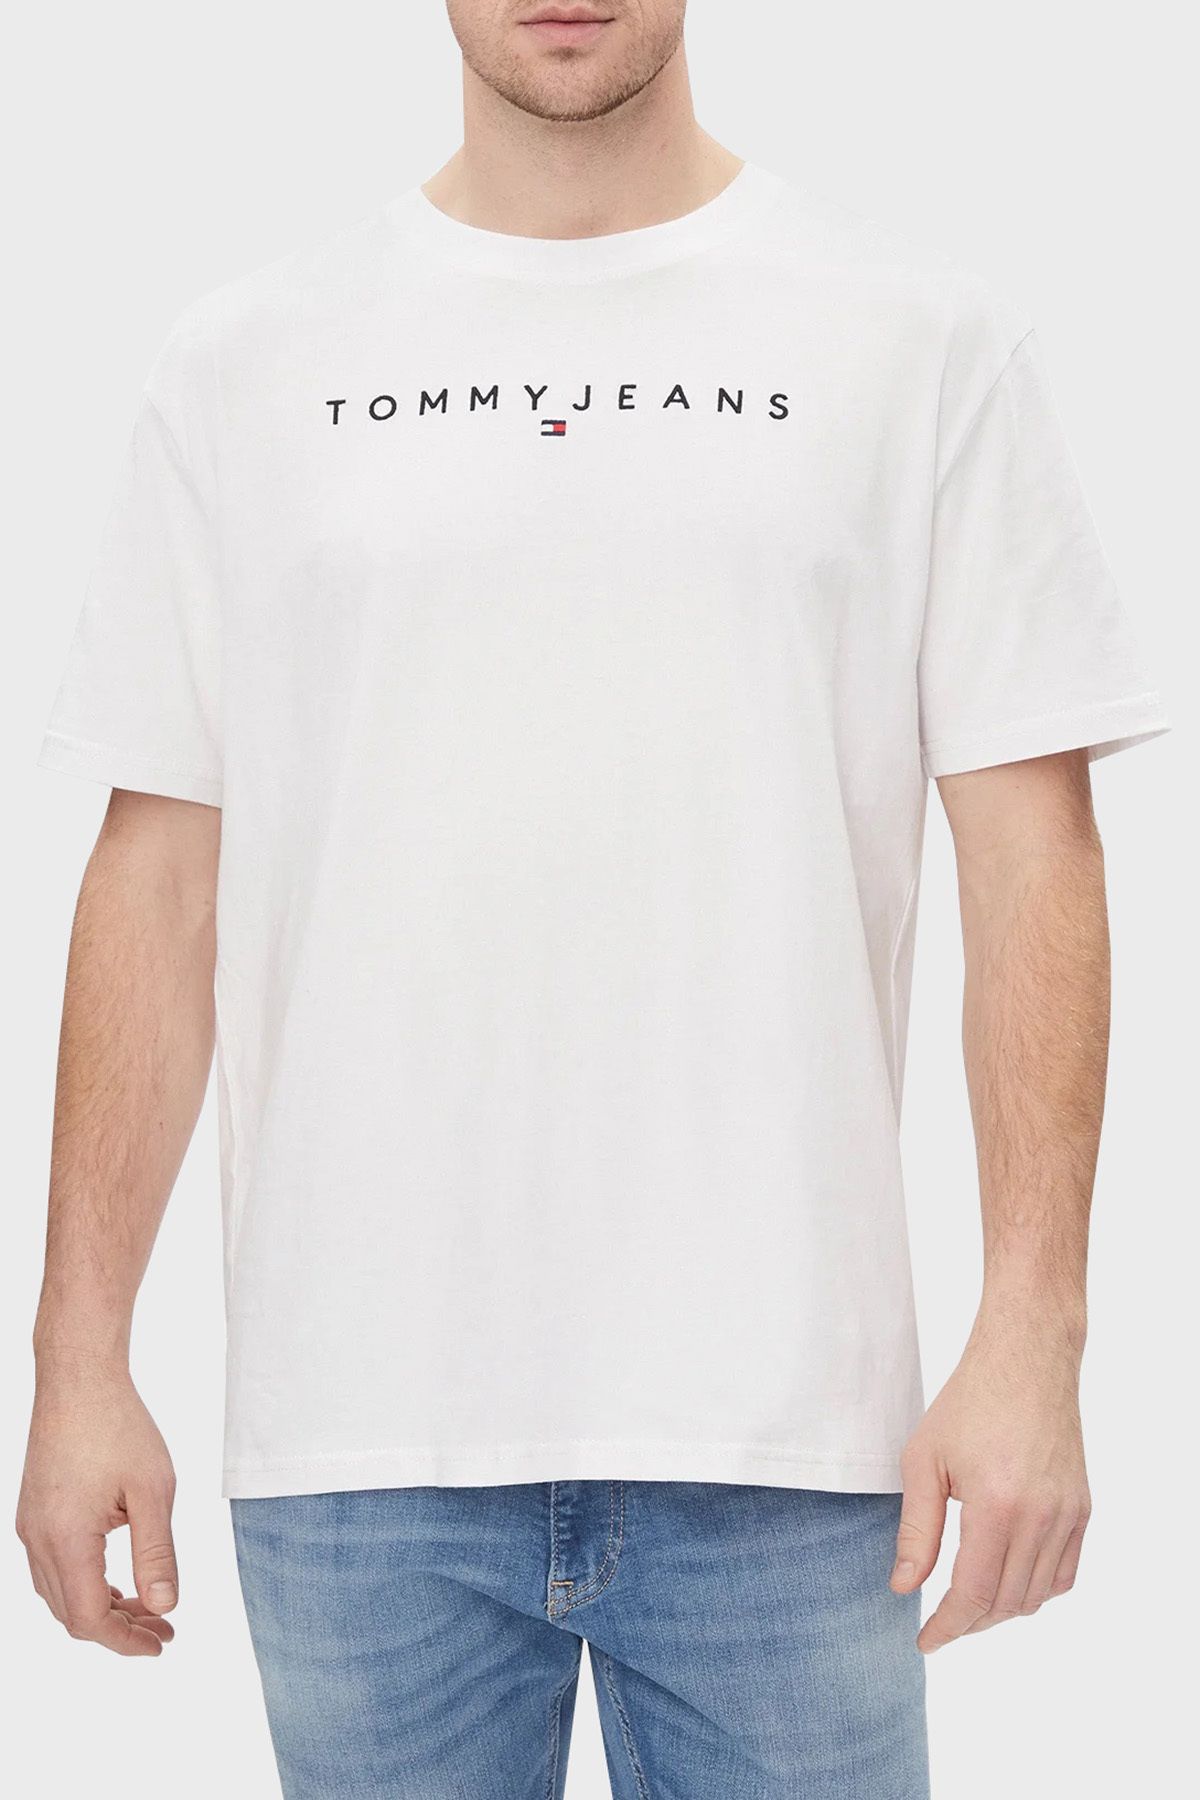 Tommy Jeans Pamuklu Regular Fit Bisiklet Yaka T Shirt Erkek T SHİRT DM0DM17993 YBR